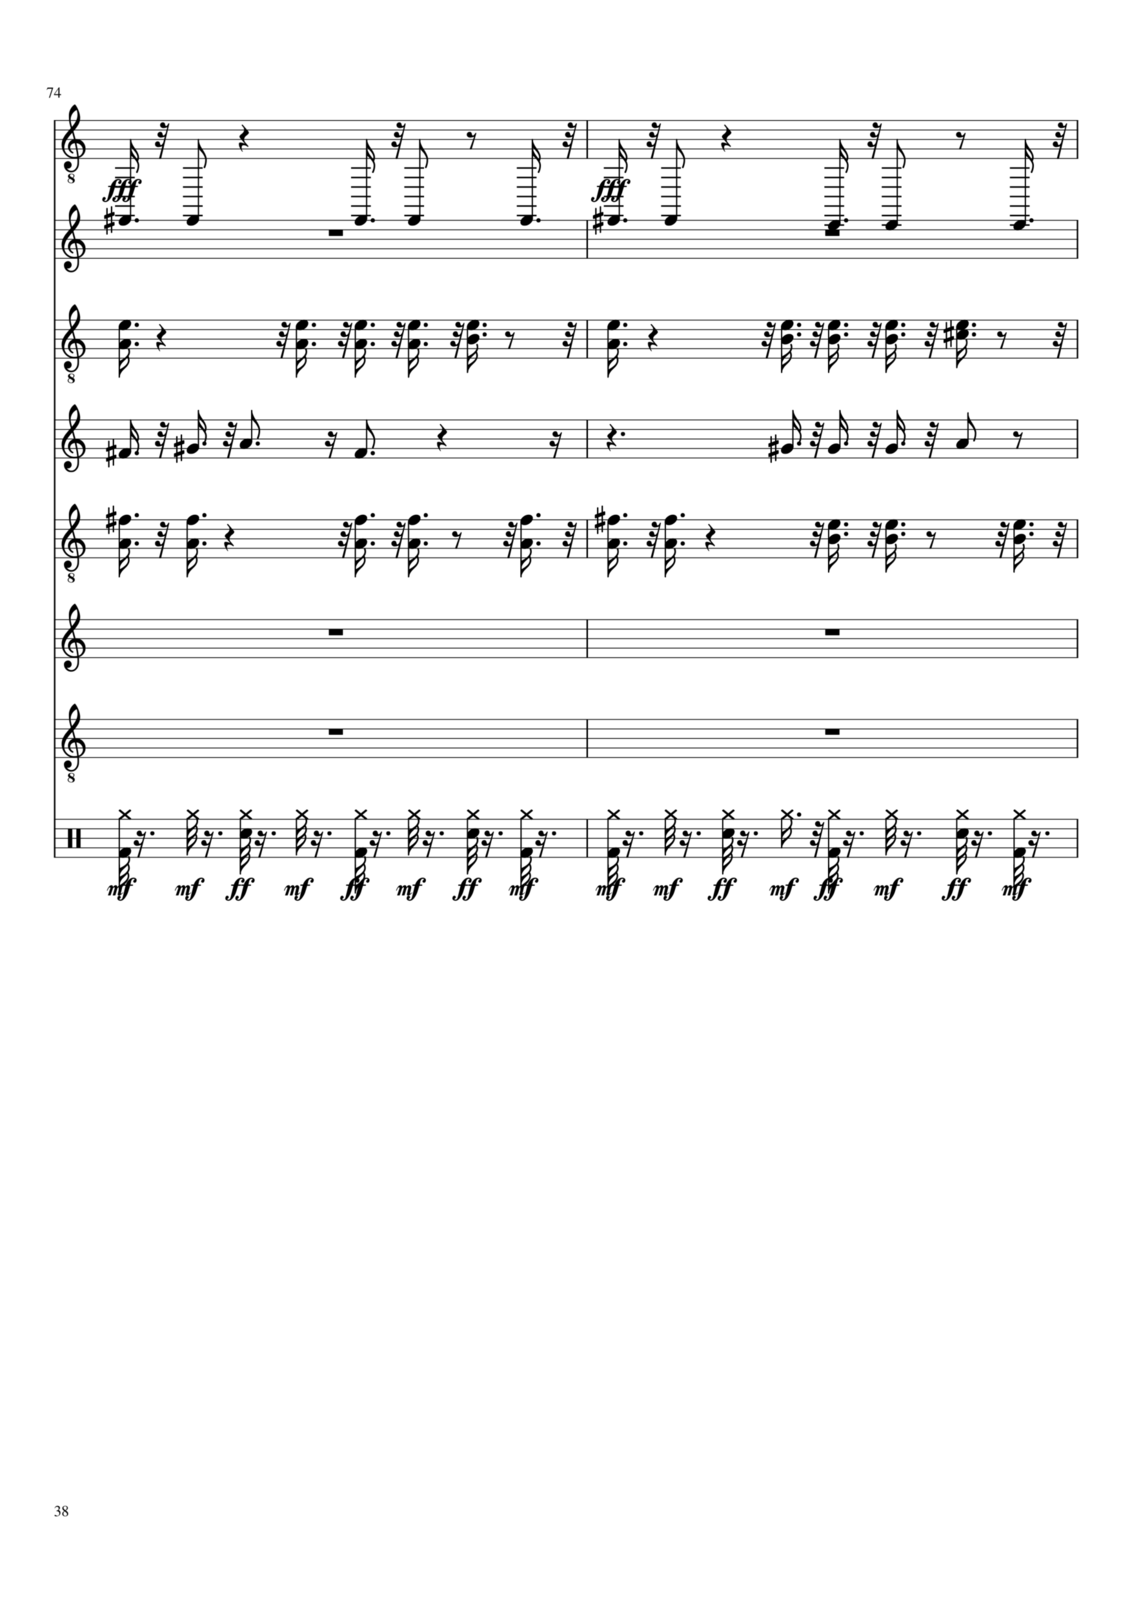 Vechnaya molodost slide, Image 11